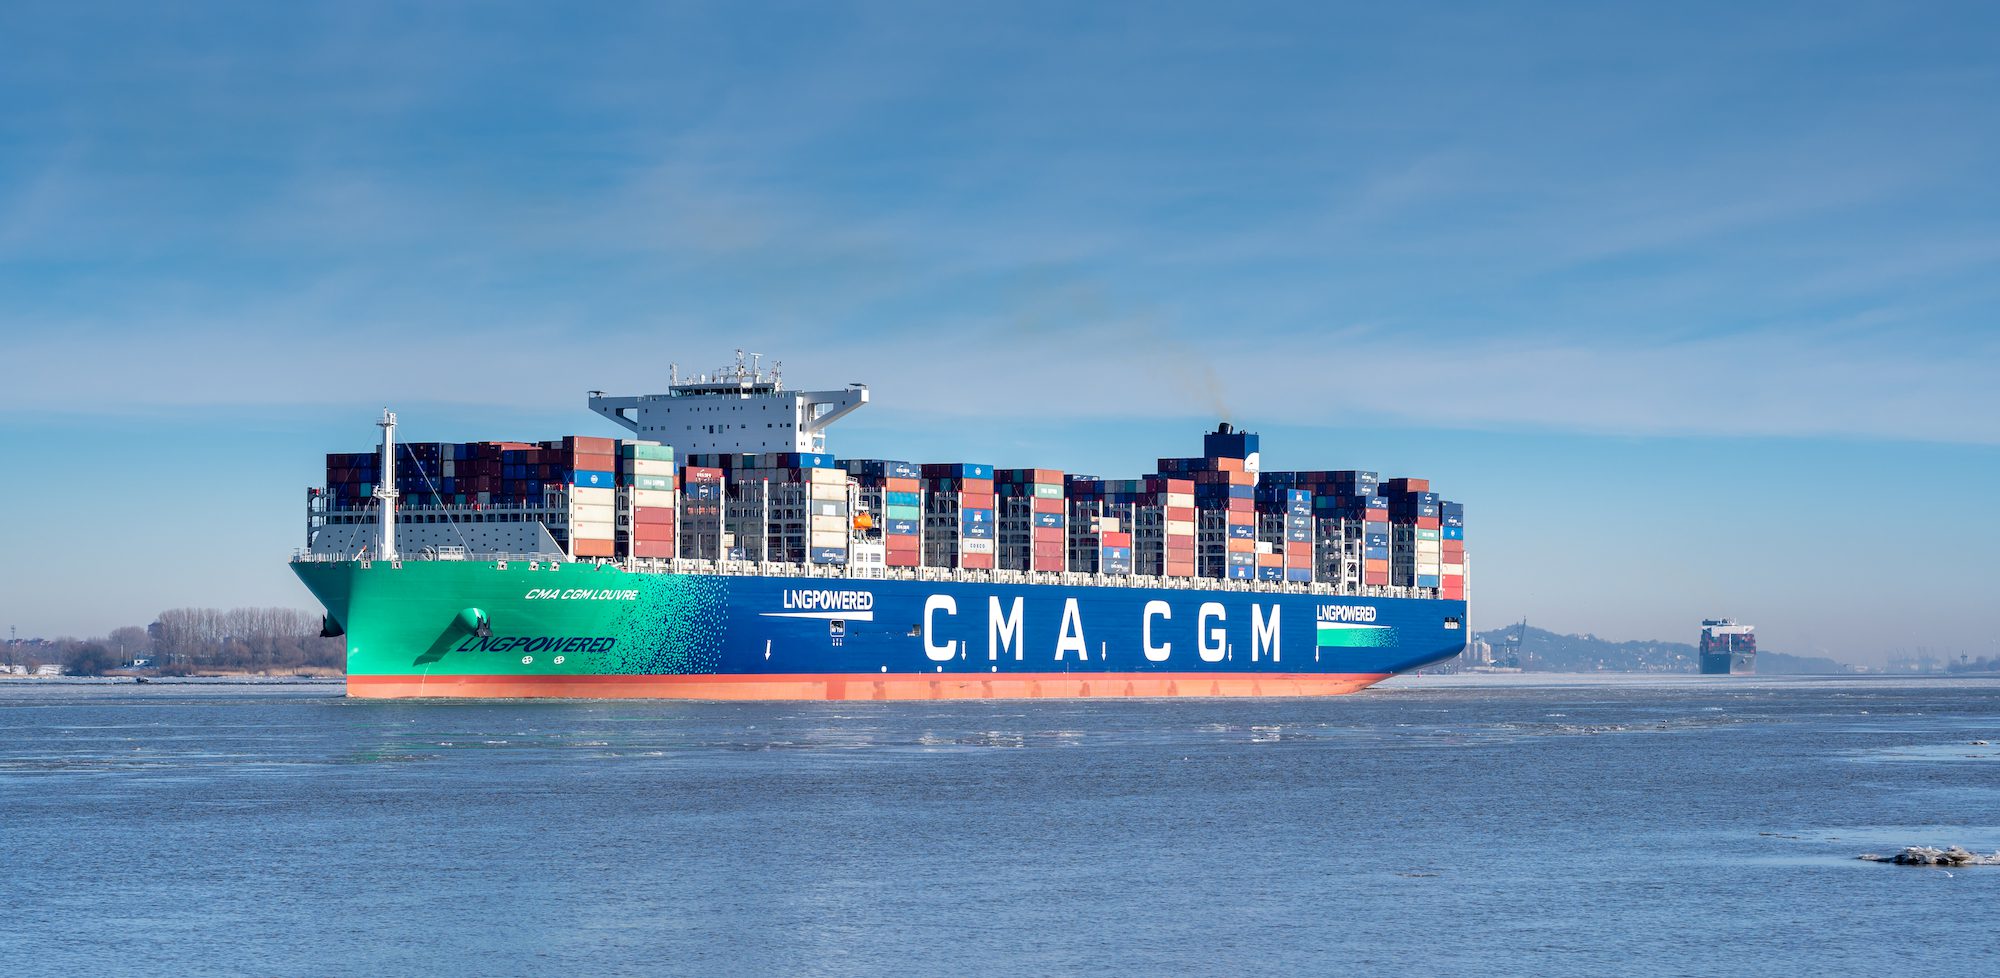 Le porte-conteneurs propulsé au GNL, le CMA CGM, sur l'Elbe, près de la ville de Hambourg, en Allemagne, le 14 février 2021. Photo : FrankHH / Shutterstock.com